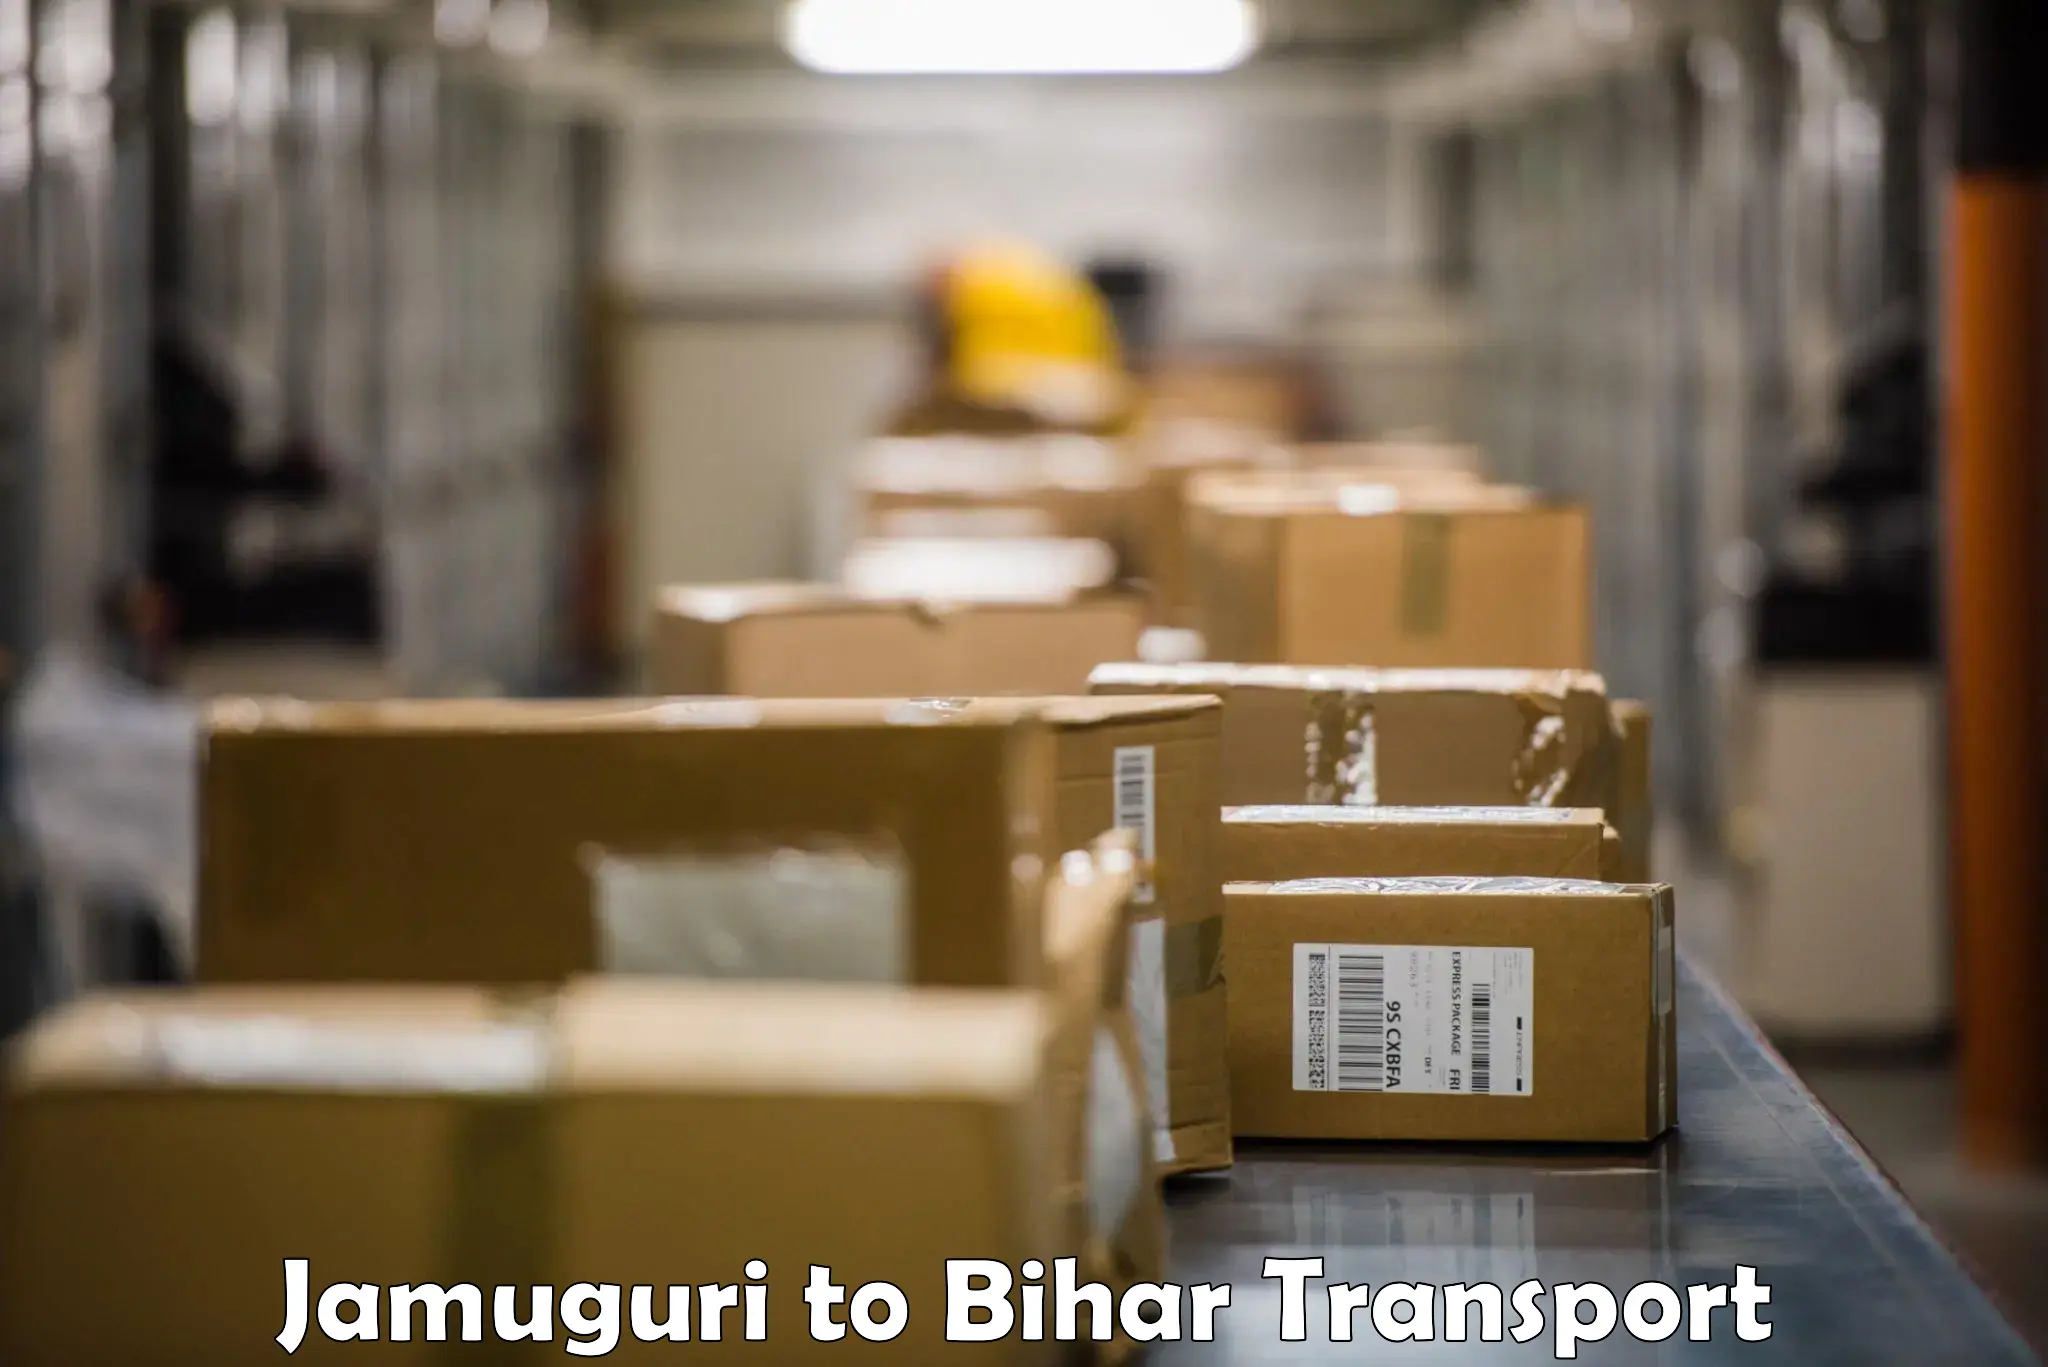 Daily transport service Jamuguri to Jagdishpur Bhojpur